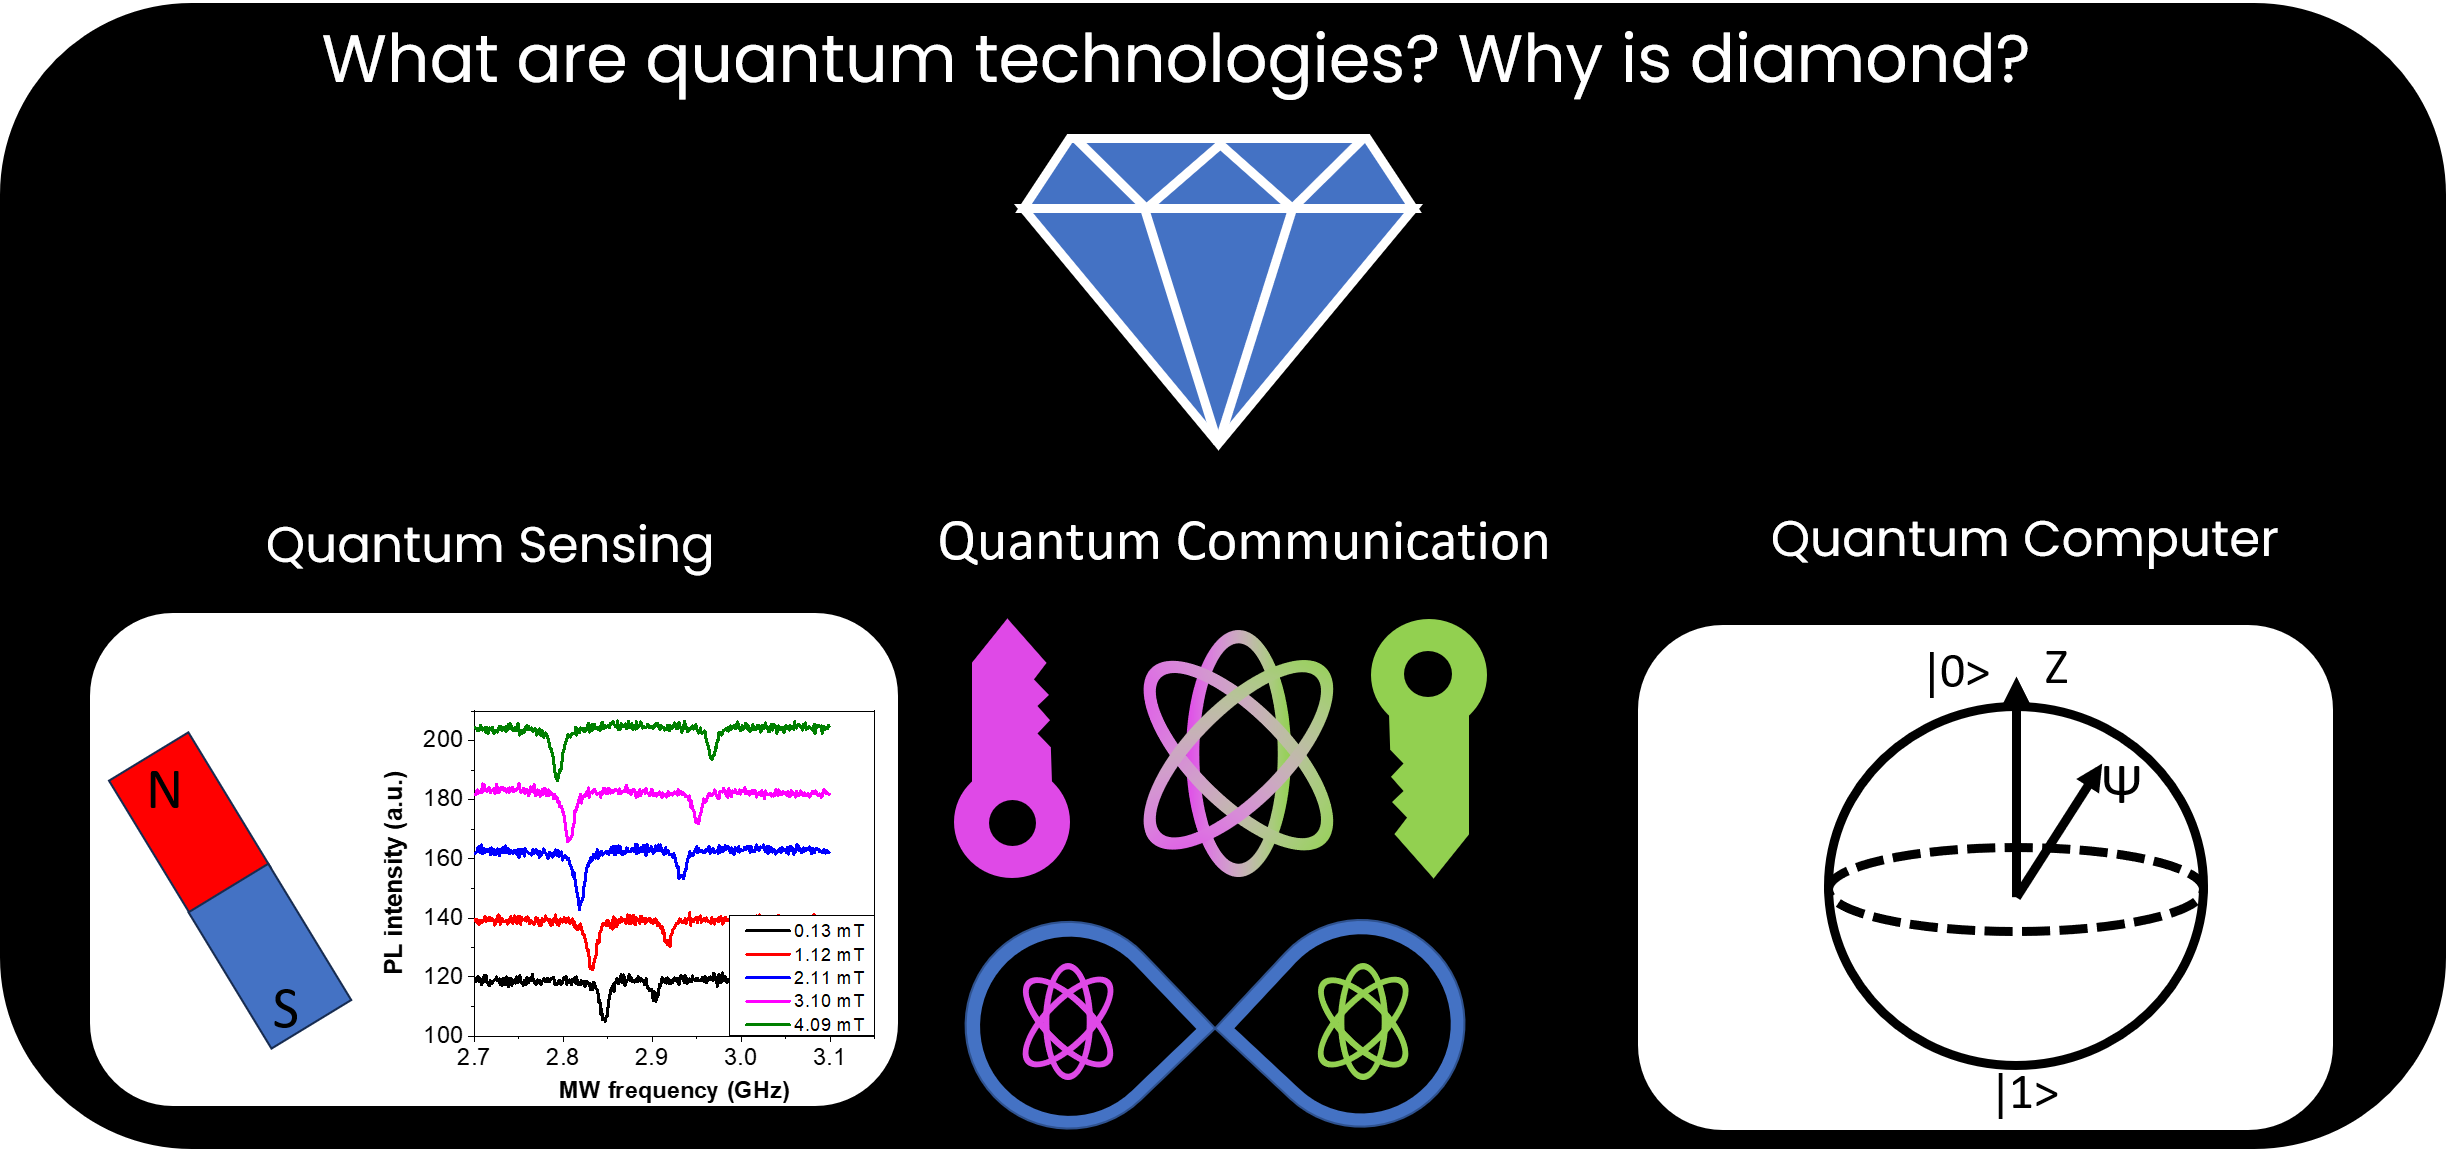 甚麼是量子科技？為何是鑽石？